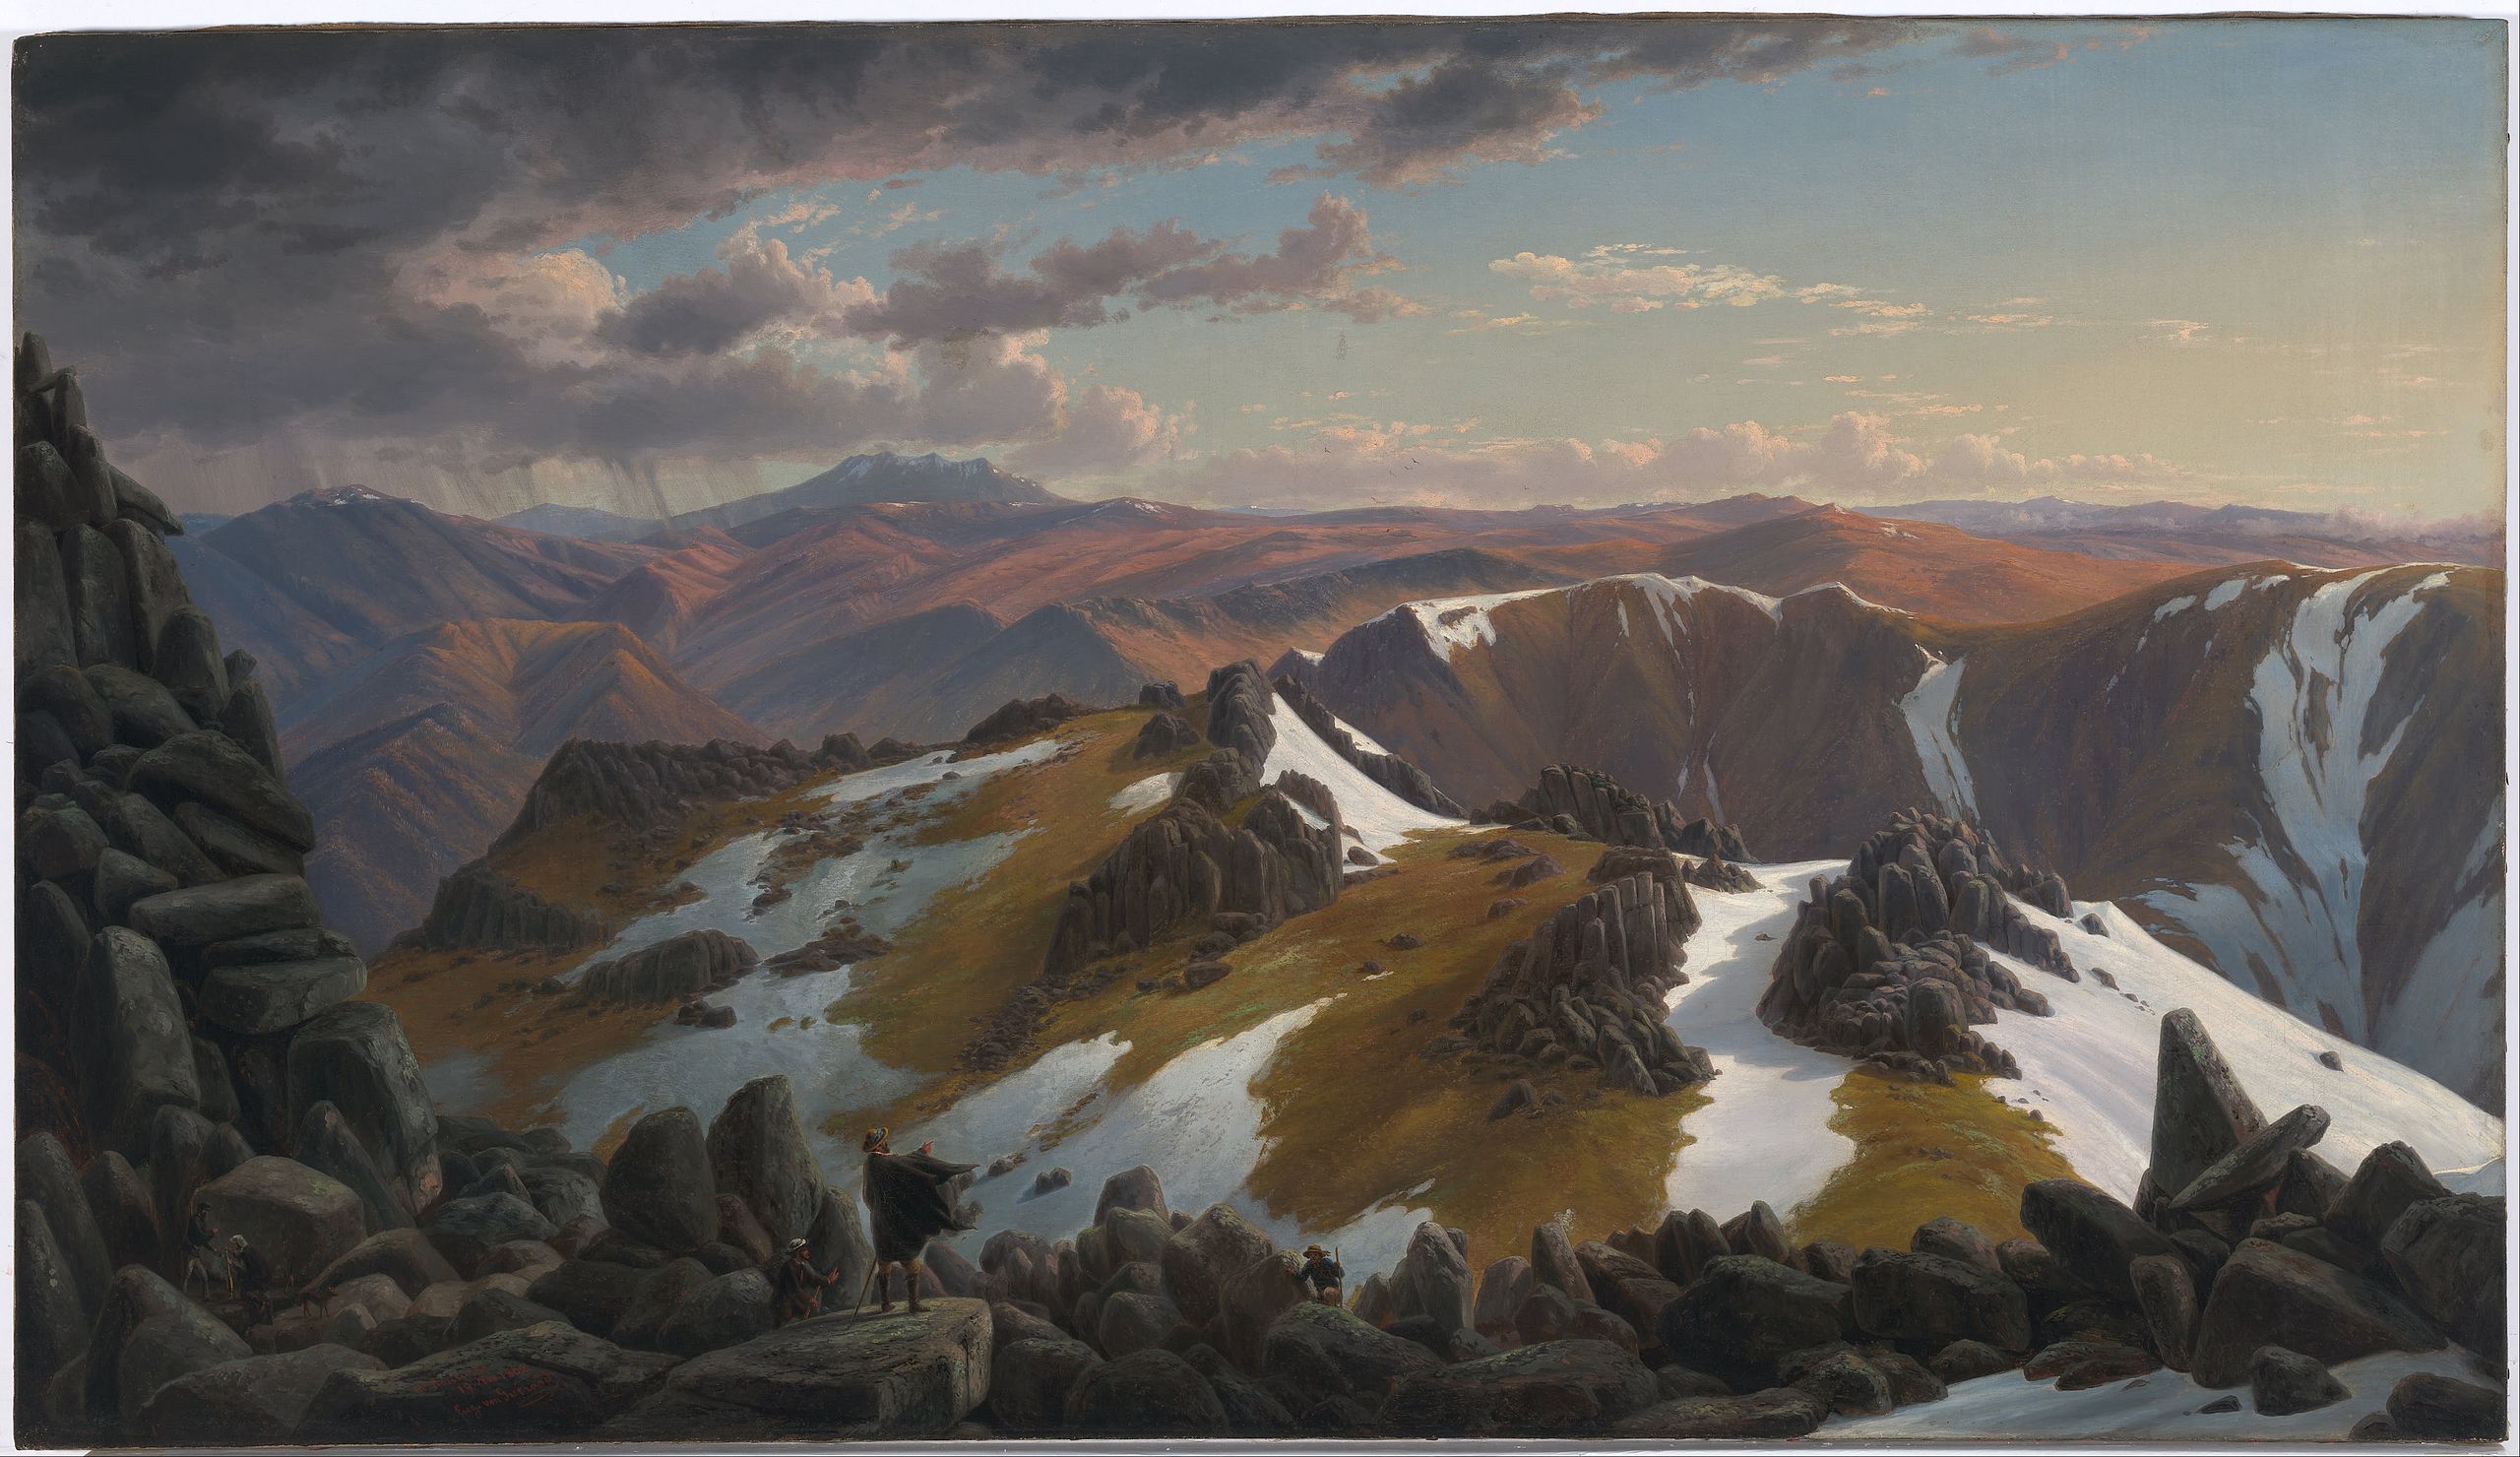 コジオスコ山、北側の頂上からの北東の眺め by Eugene von Guérard - 1863年 - 66.5 x 116.8 cm 